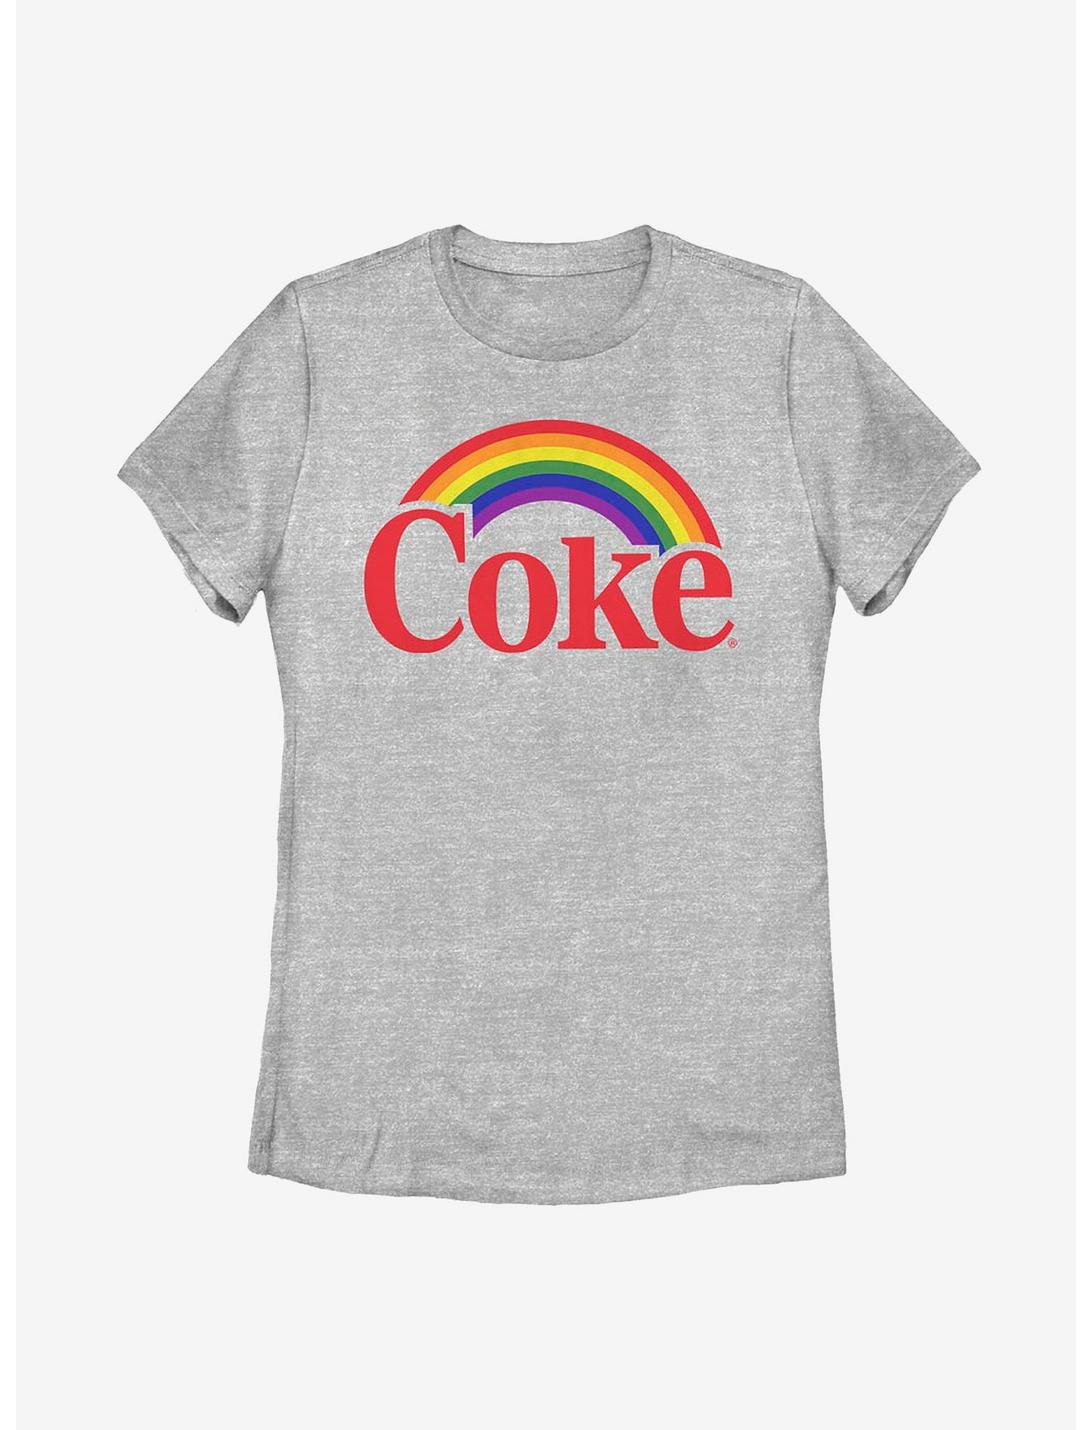 Coca-Cola Rainbow Over Coke Womens T-Shirt, ATH HTR, hi-res